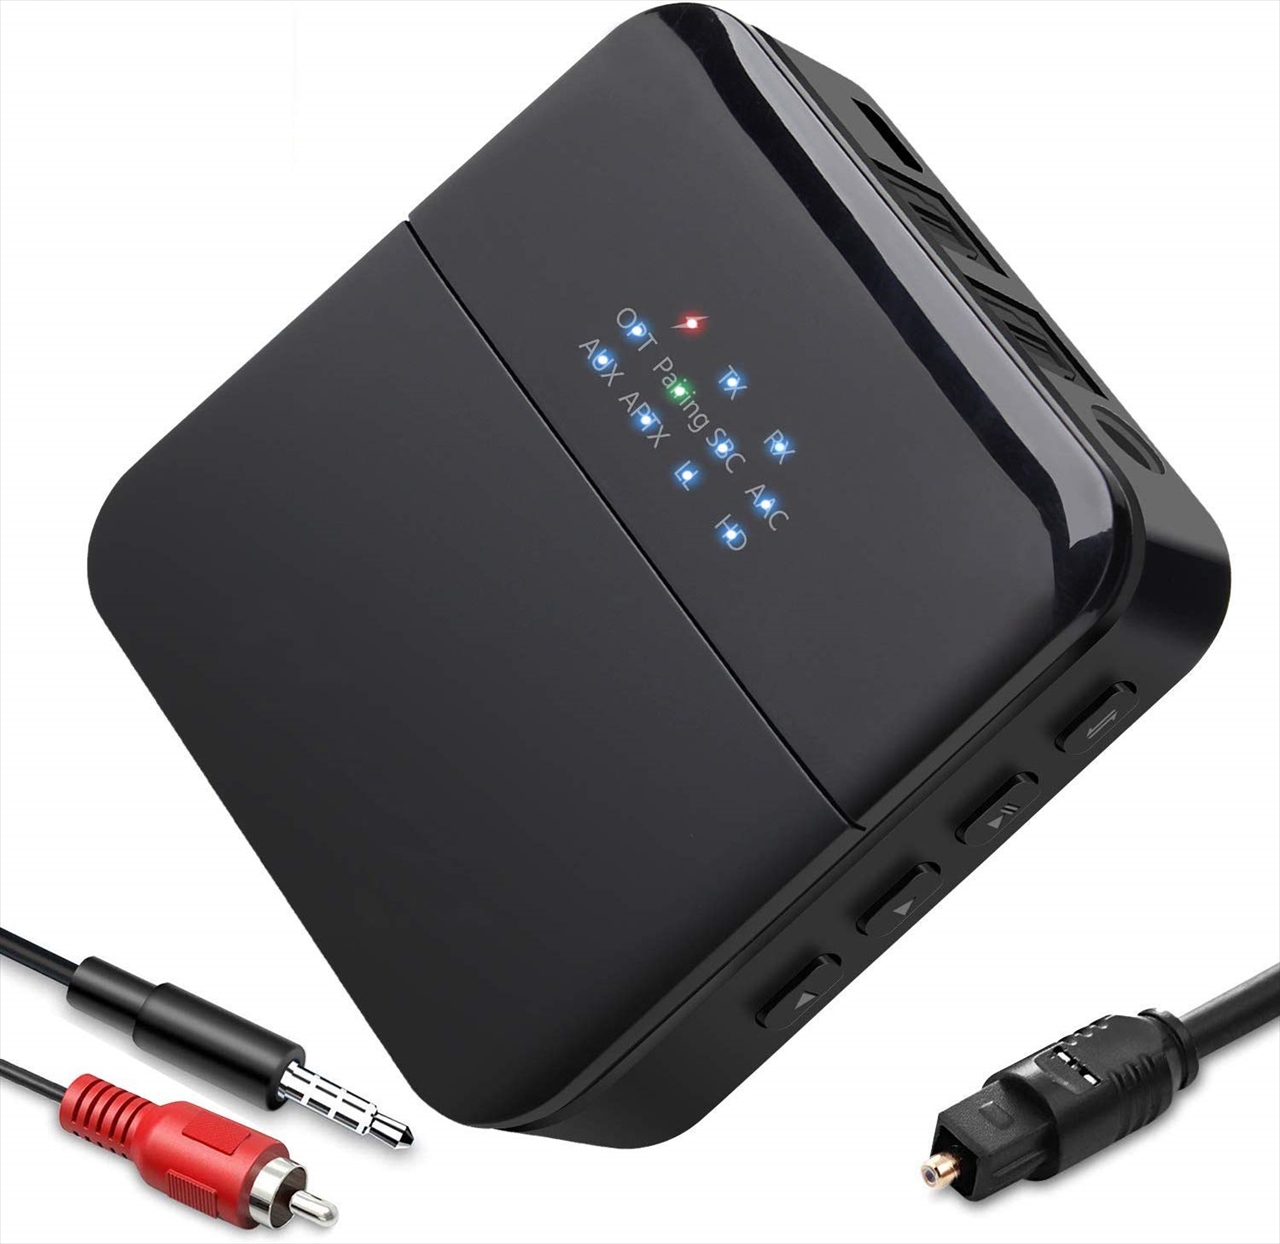 Bt Tm600 トランスミッター レシーバー Bluetoothオーディオレシーバー Bluetooth Wireless Pcパーツと自作パソコン 組み立てパソコンの専門店 1 S Pcワンズ